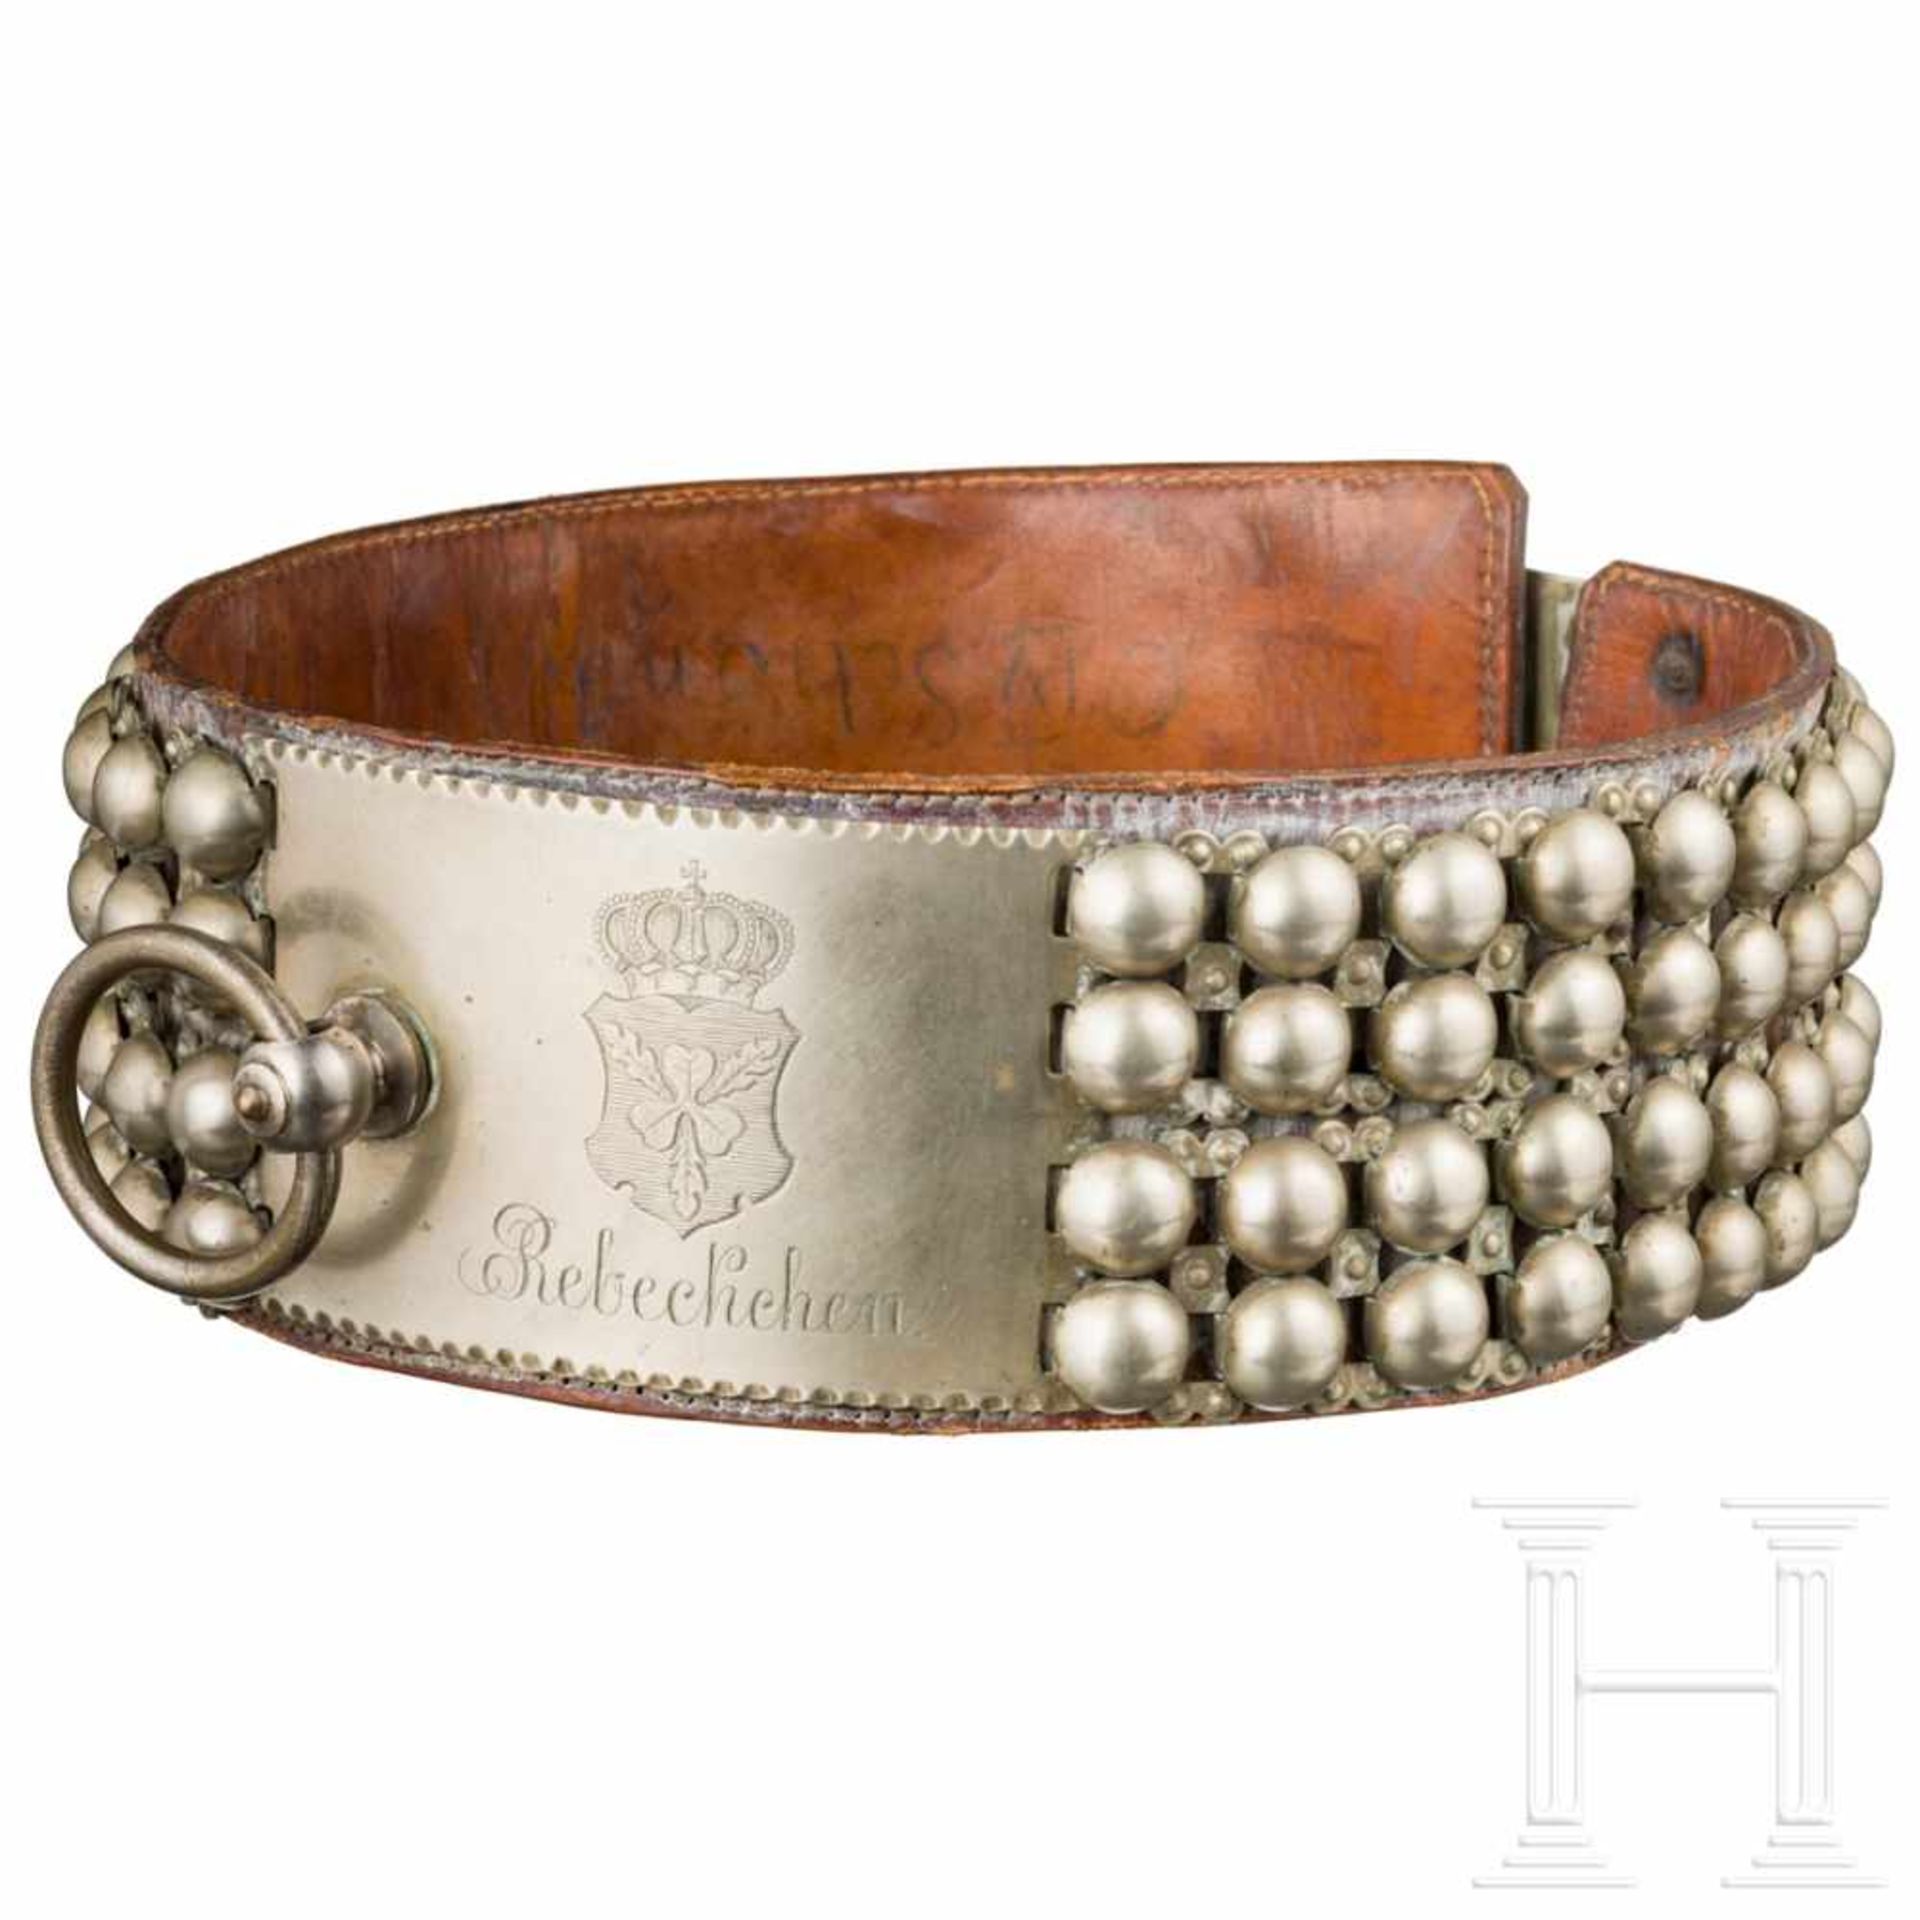 Prince Otto von Bismarck – a collar of the "imperial dog" RebeckchenBroad band of smooth nickel - Bild 2 aus 4